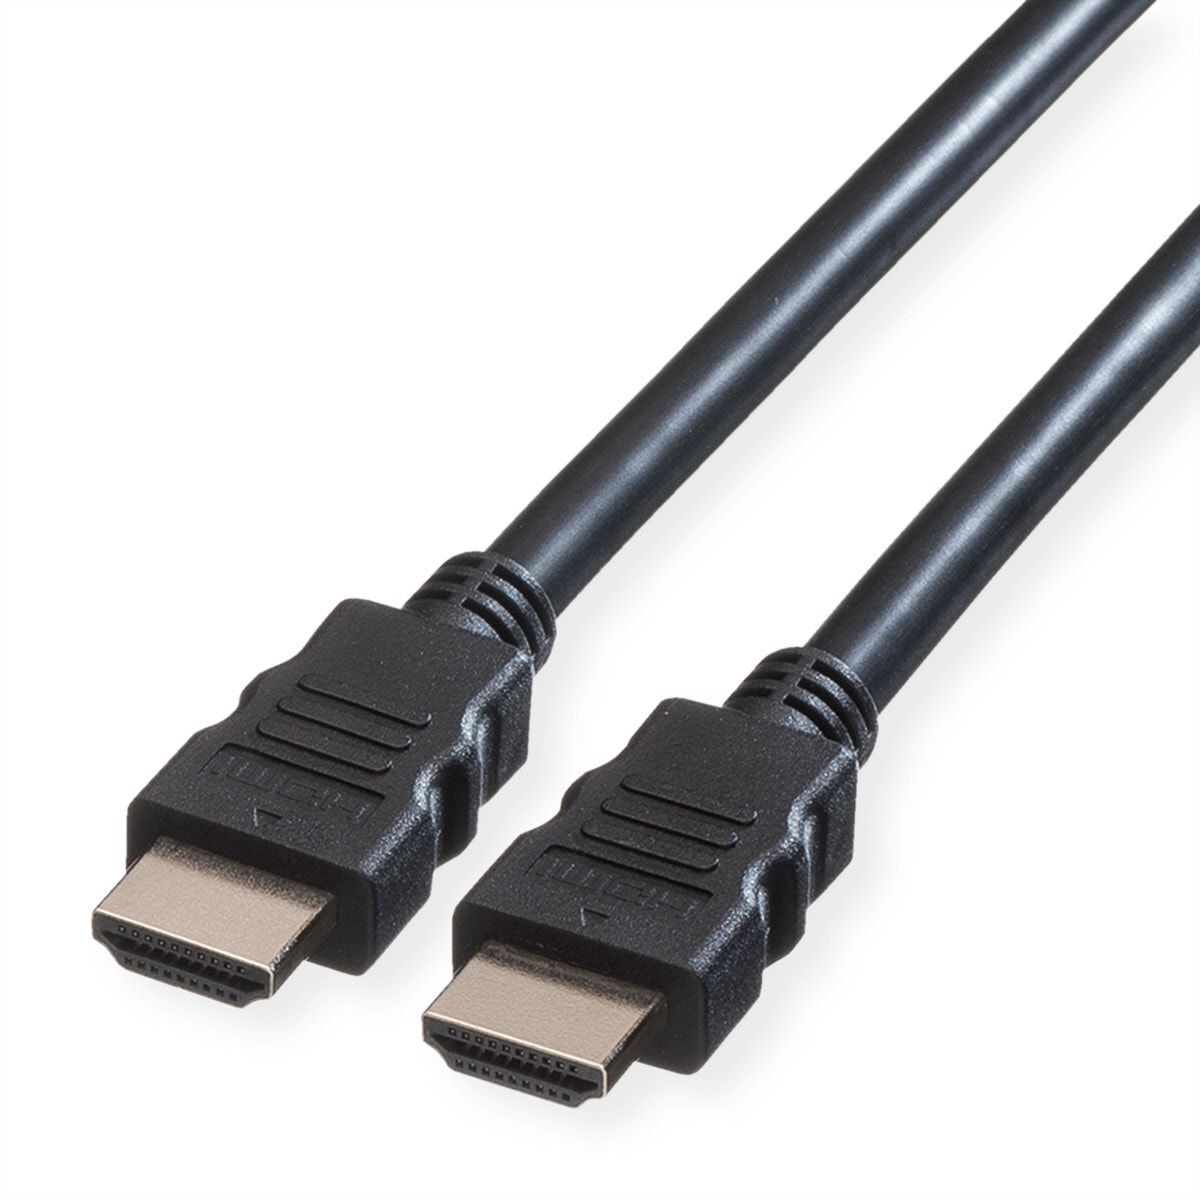 Компьютерный разъем или переходник ROLINE ROTRONIC-SECOMP GREEN HDMI High-Speed Kabel ST/ST 3m - Cable - Digital/Display/Video